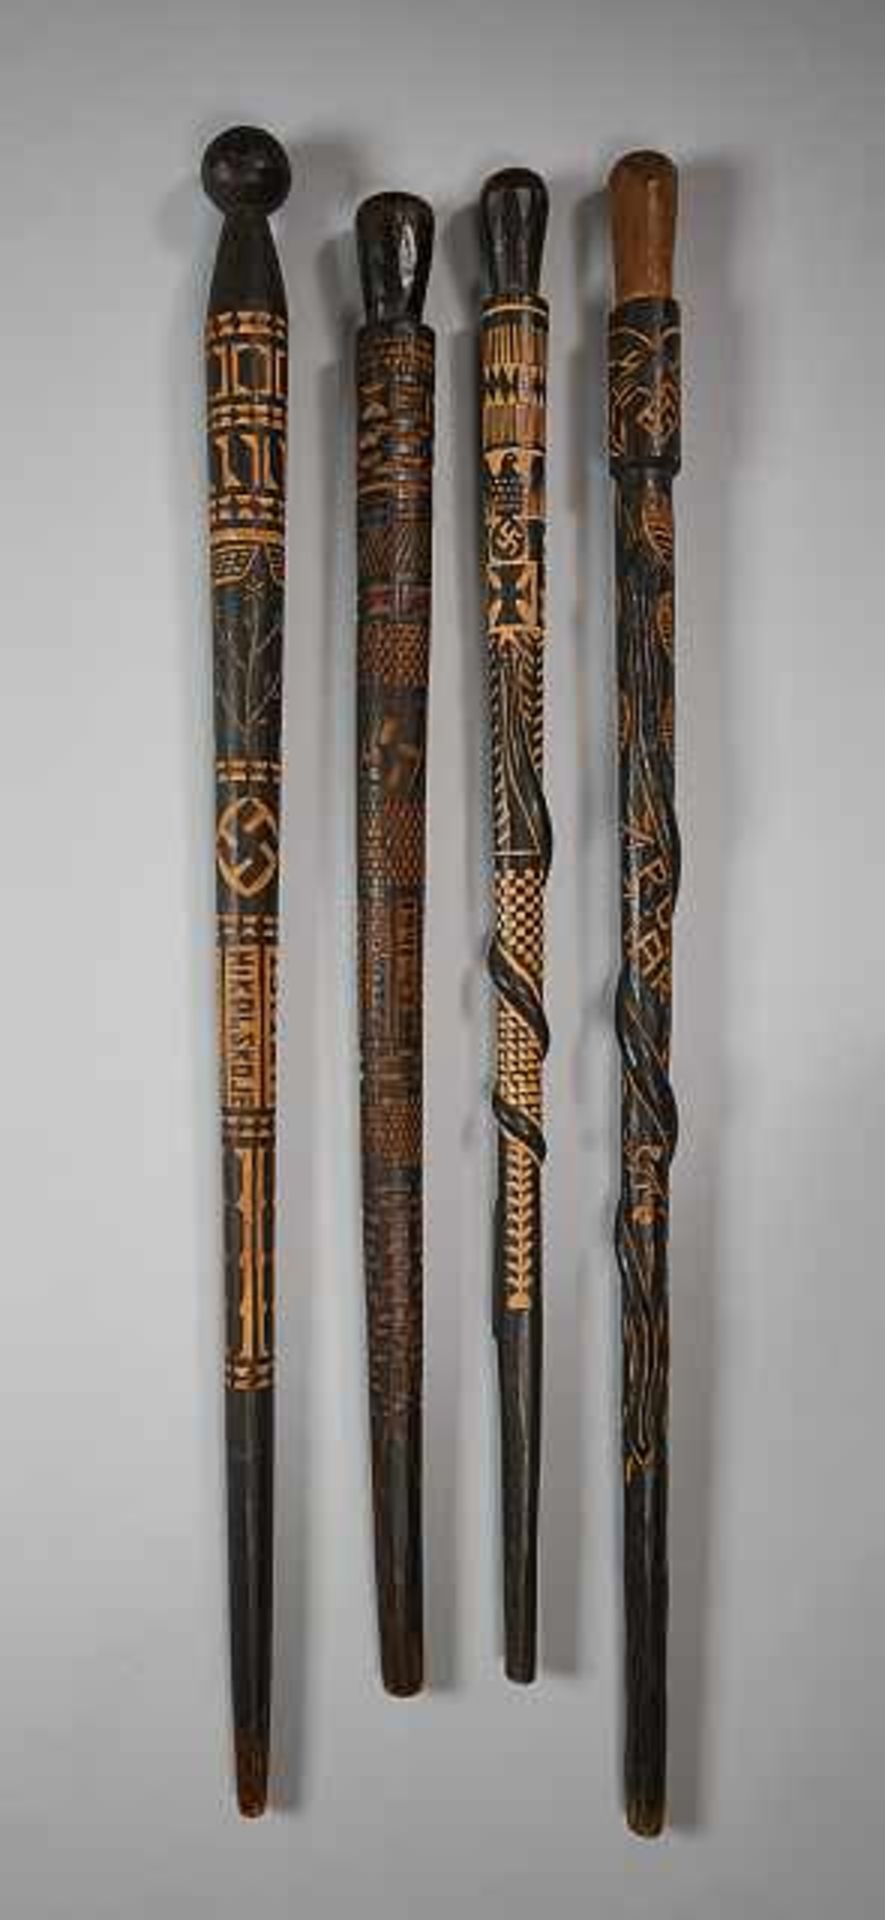 Deutsches Reich 1933 - 1945 - Heer : Wolchow Stick.Wooden walking stick has ornate hand carved